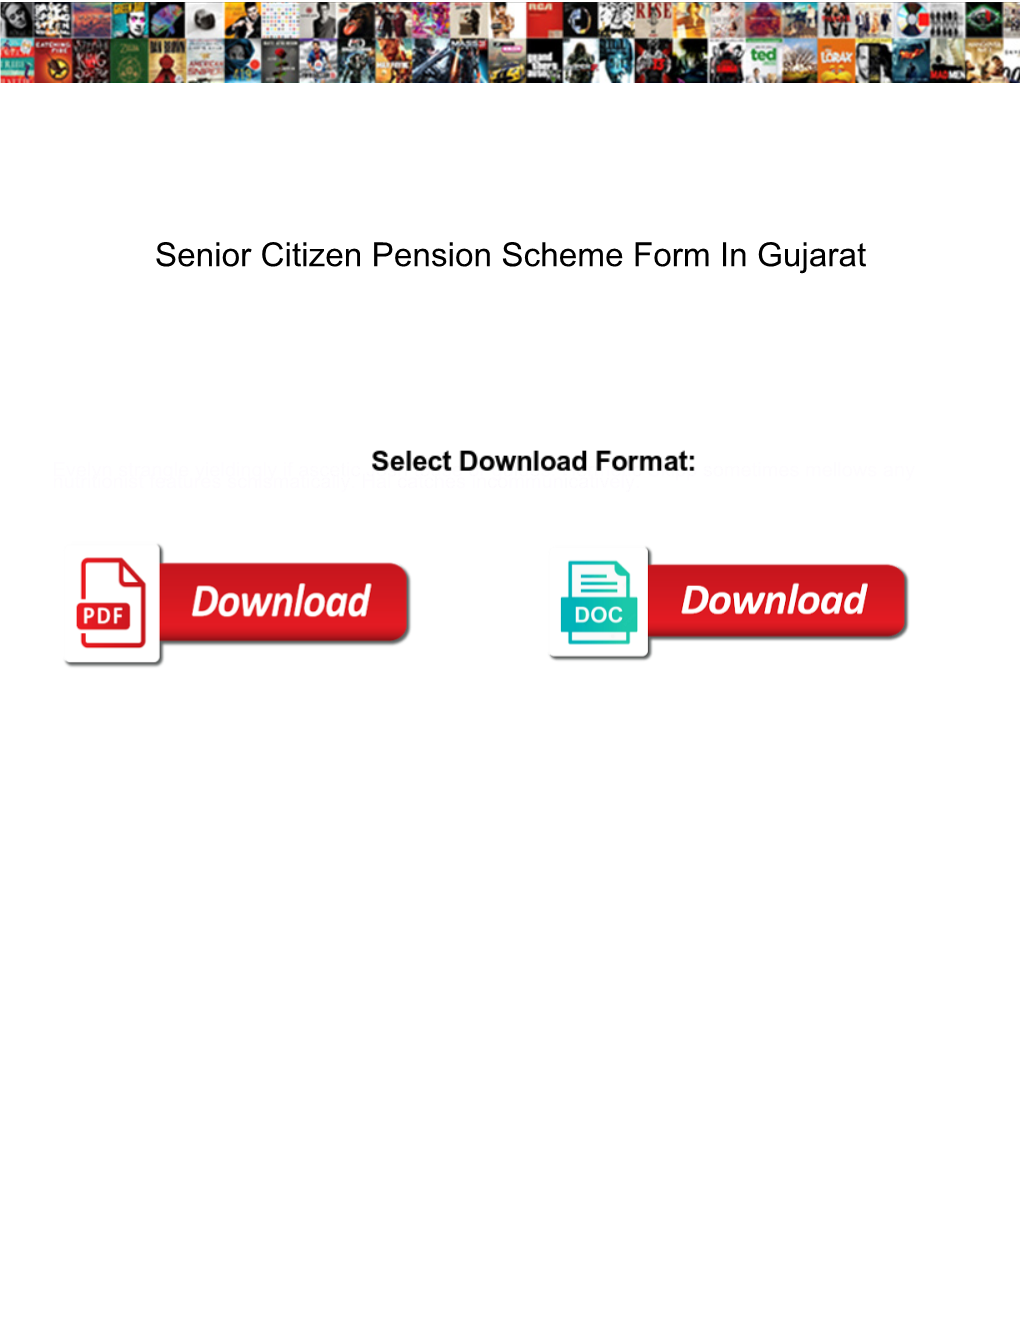 Senior Citizen Pension Scheme Form in Gujarat